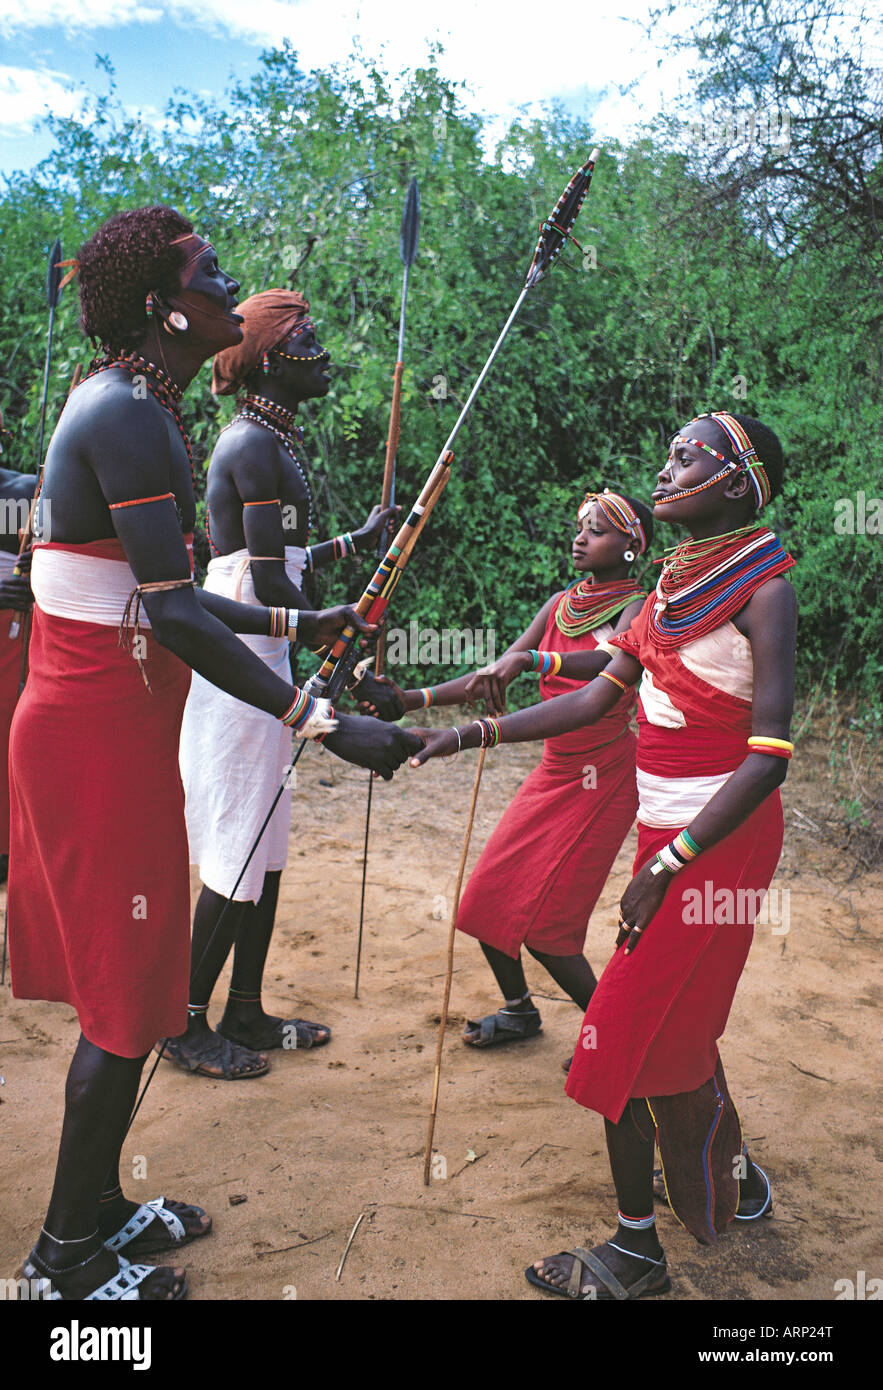 Samburu moran ou guerriers et des filles danser en costume traditionnel de la réserve nationale de Samburu, Kenya Afrique de l'Est Banque D'Images